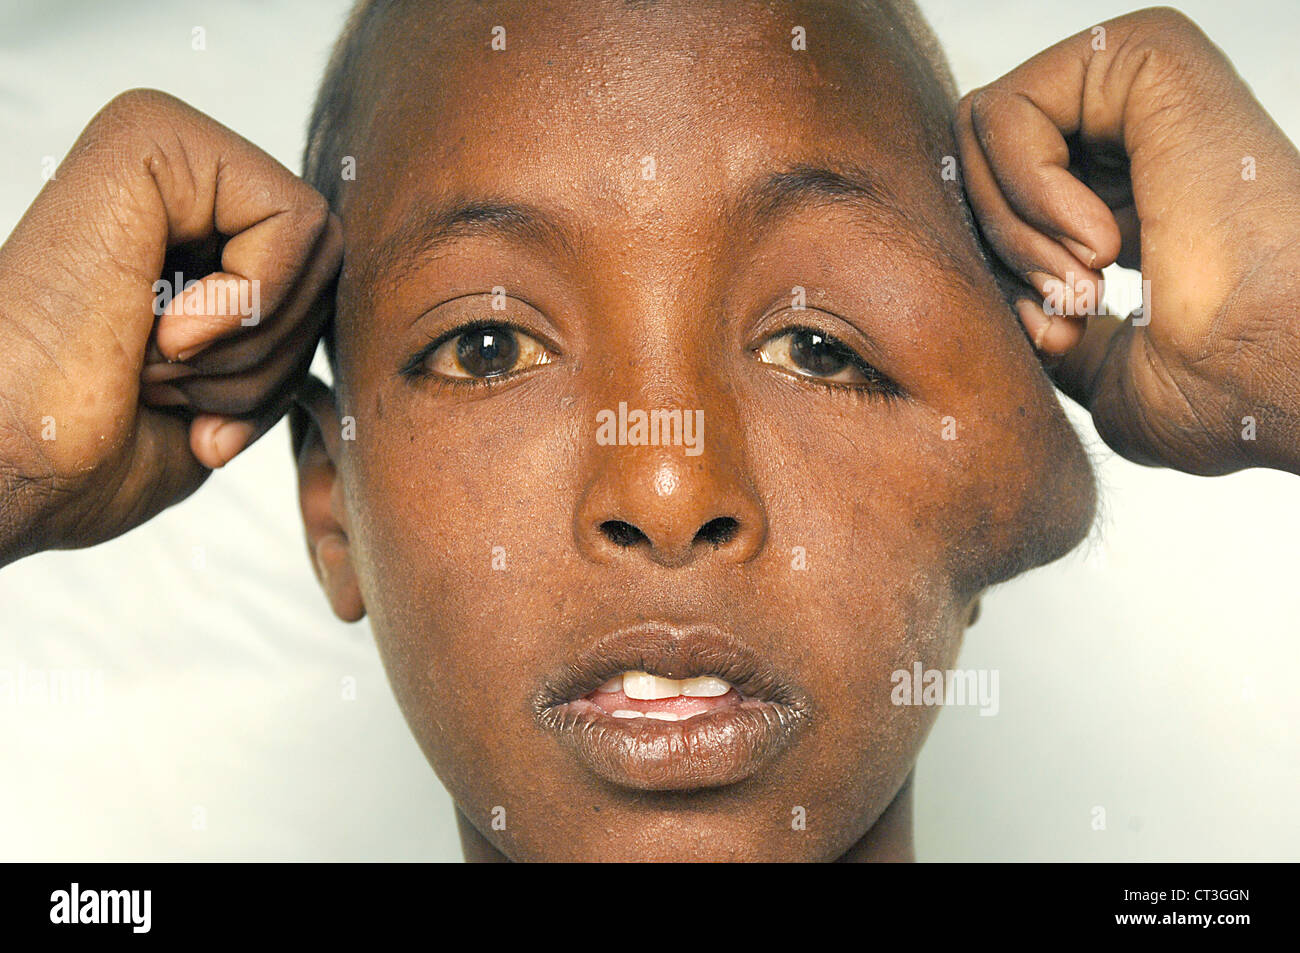 13 Jahre alte männliche Neuro Hämangiom und Tinea Capitis - Soba, Sudan leiden. Tinea Capitis ist besser bekannt als Scherpilzflechte in der Kopfhaut. Stockfoto